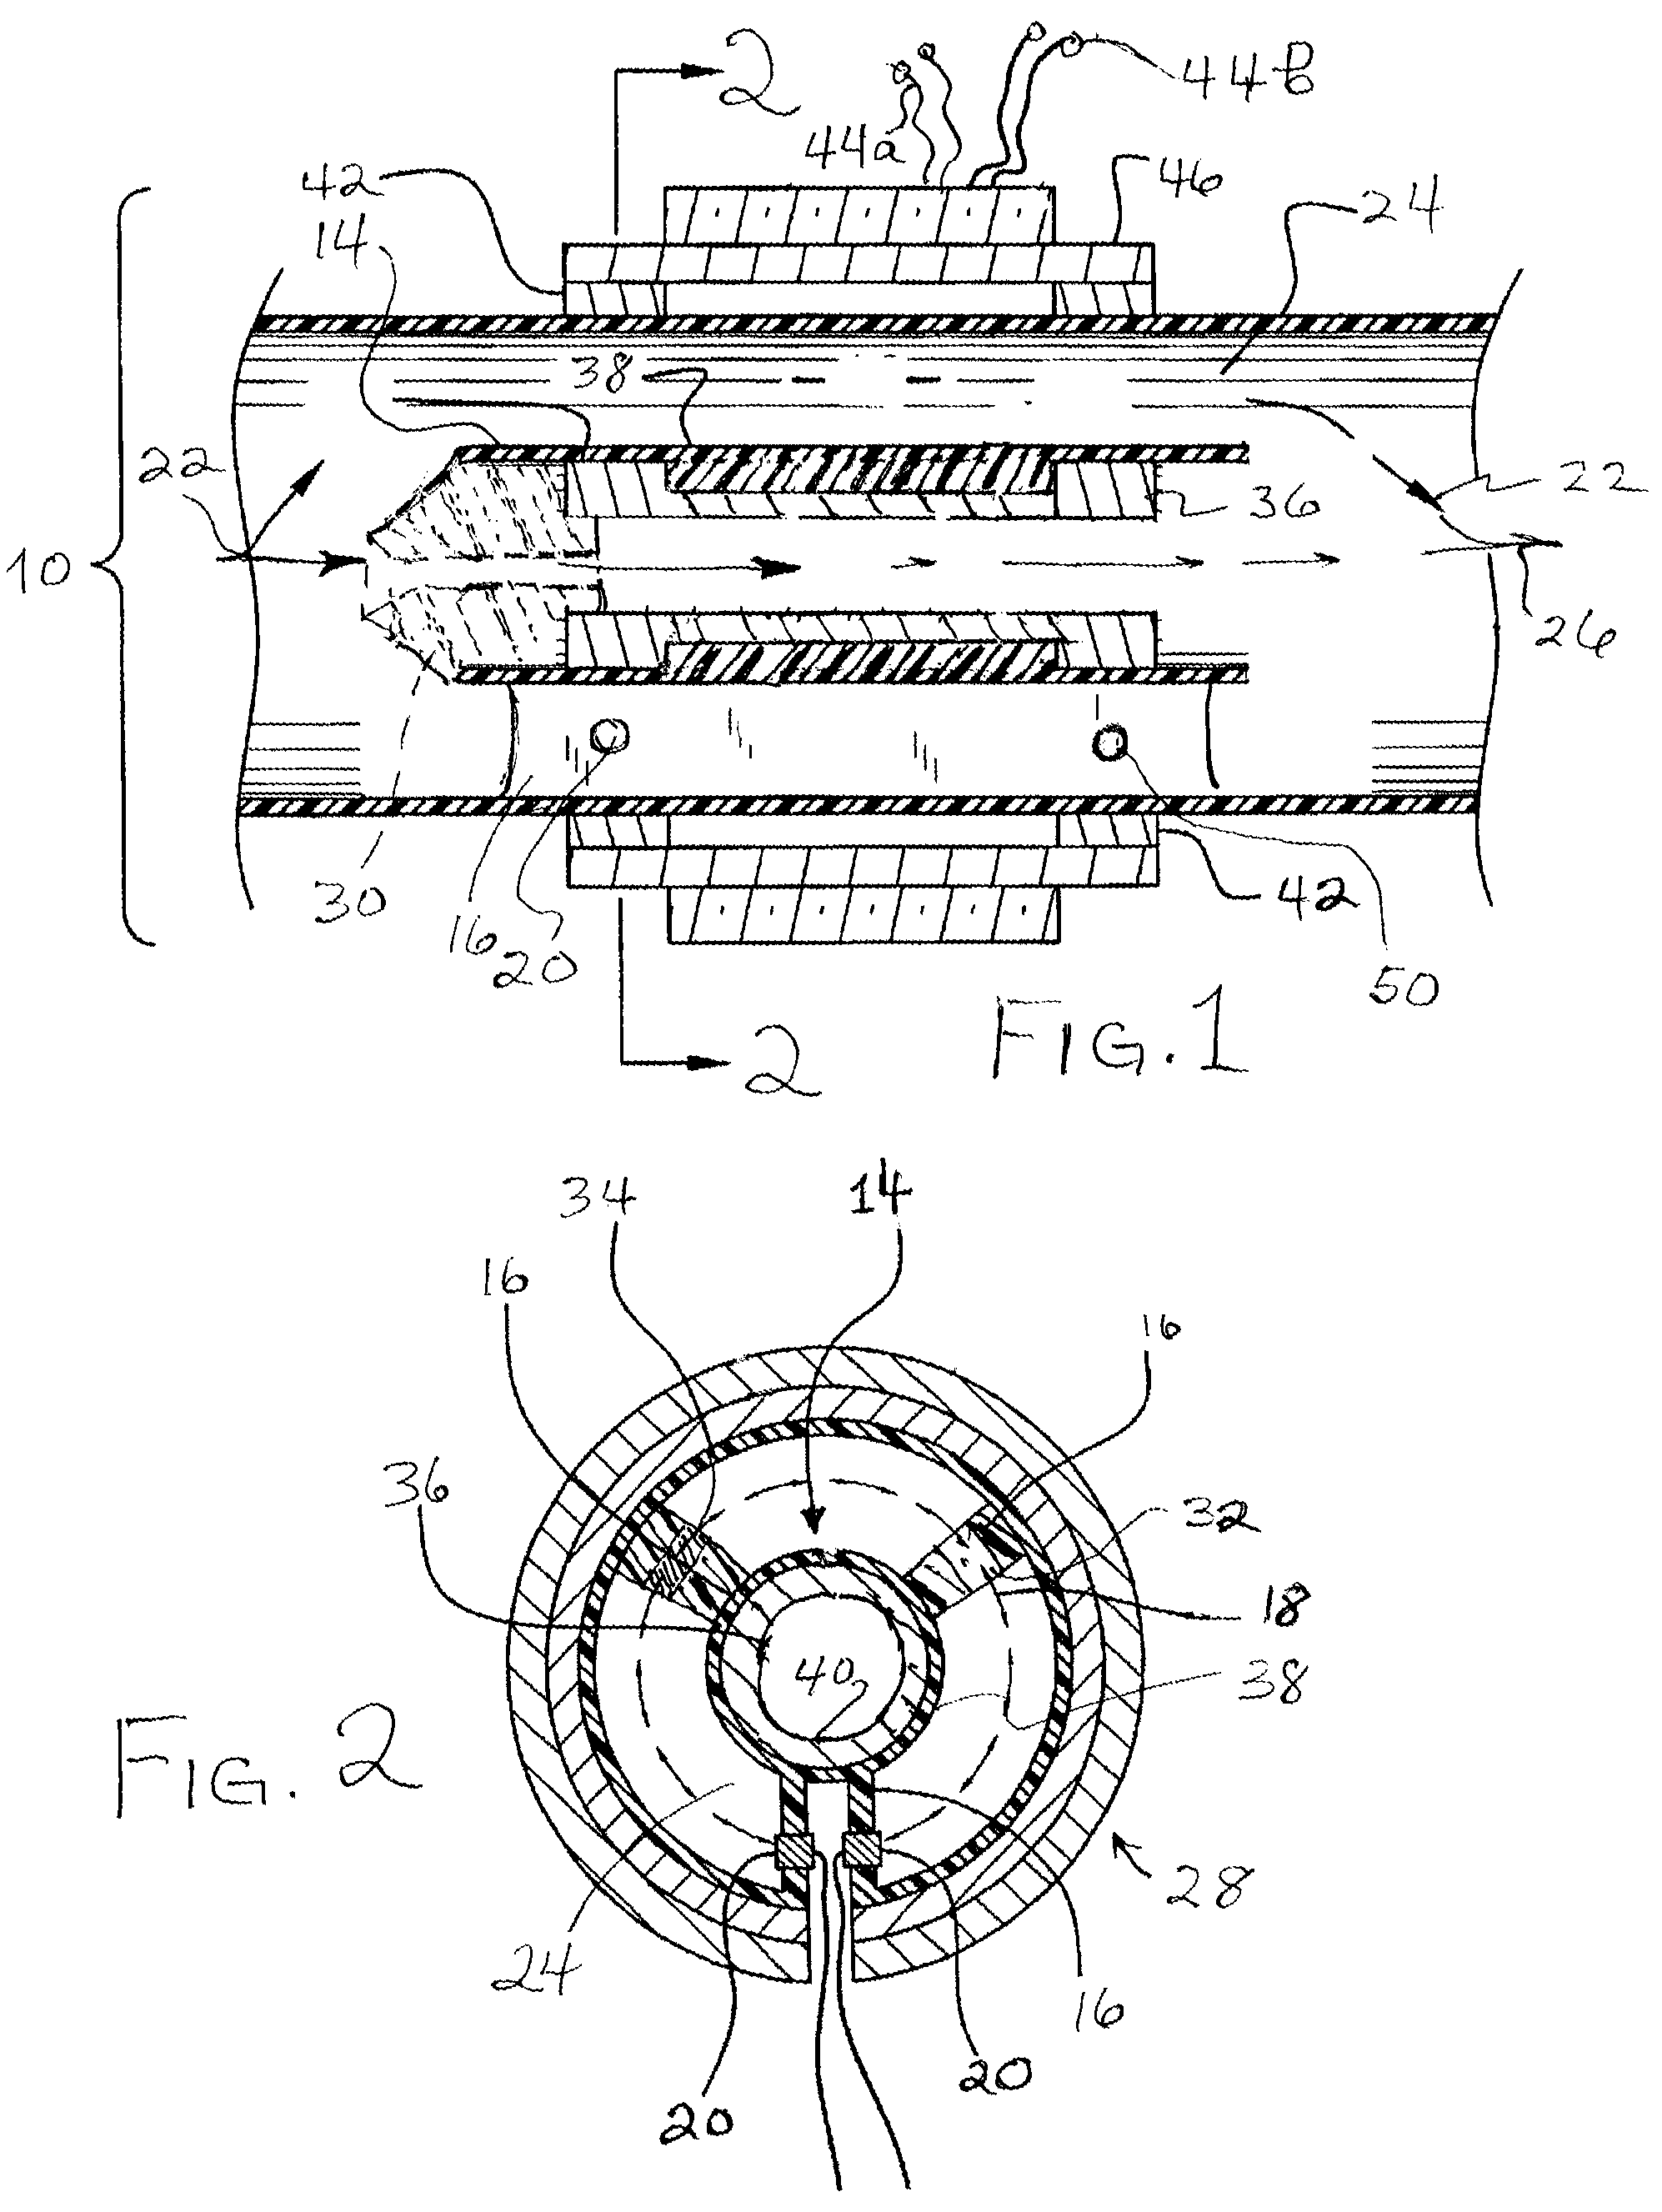 Magnetic flow meter providing quasi-annular flow